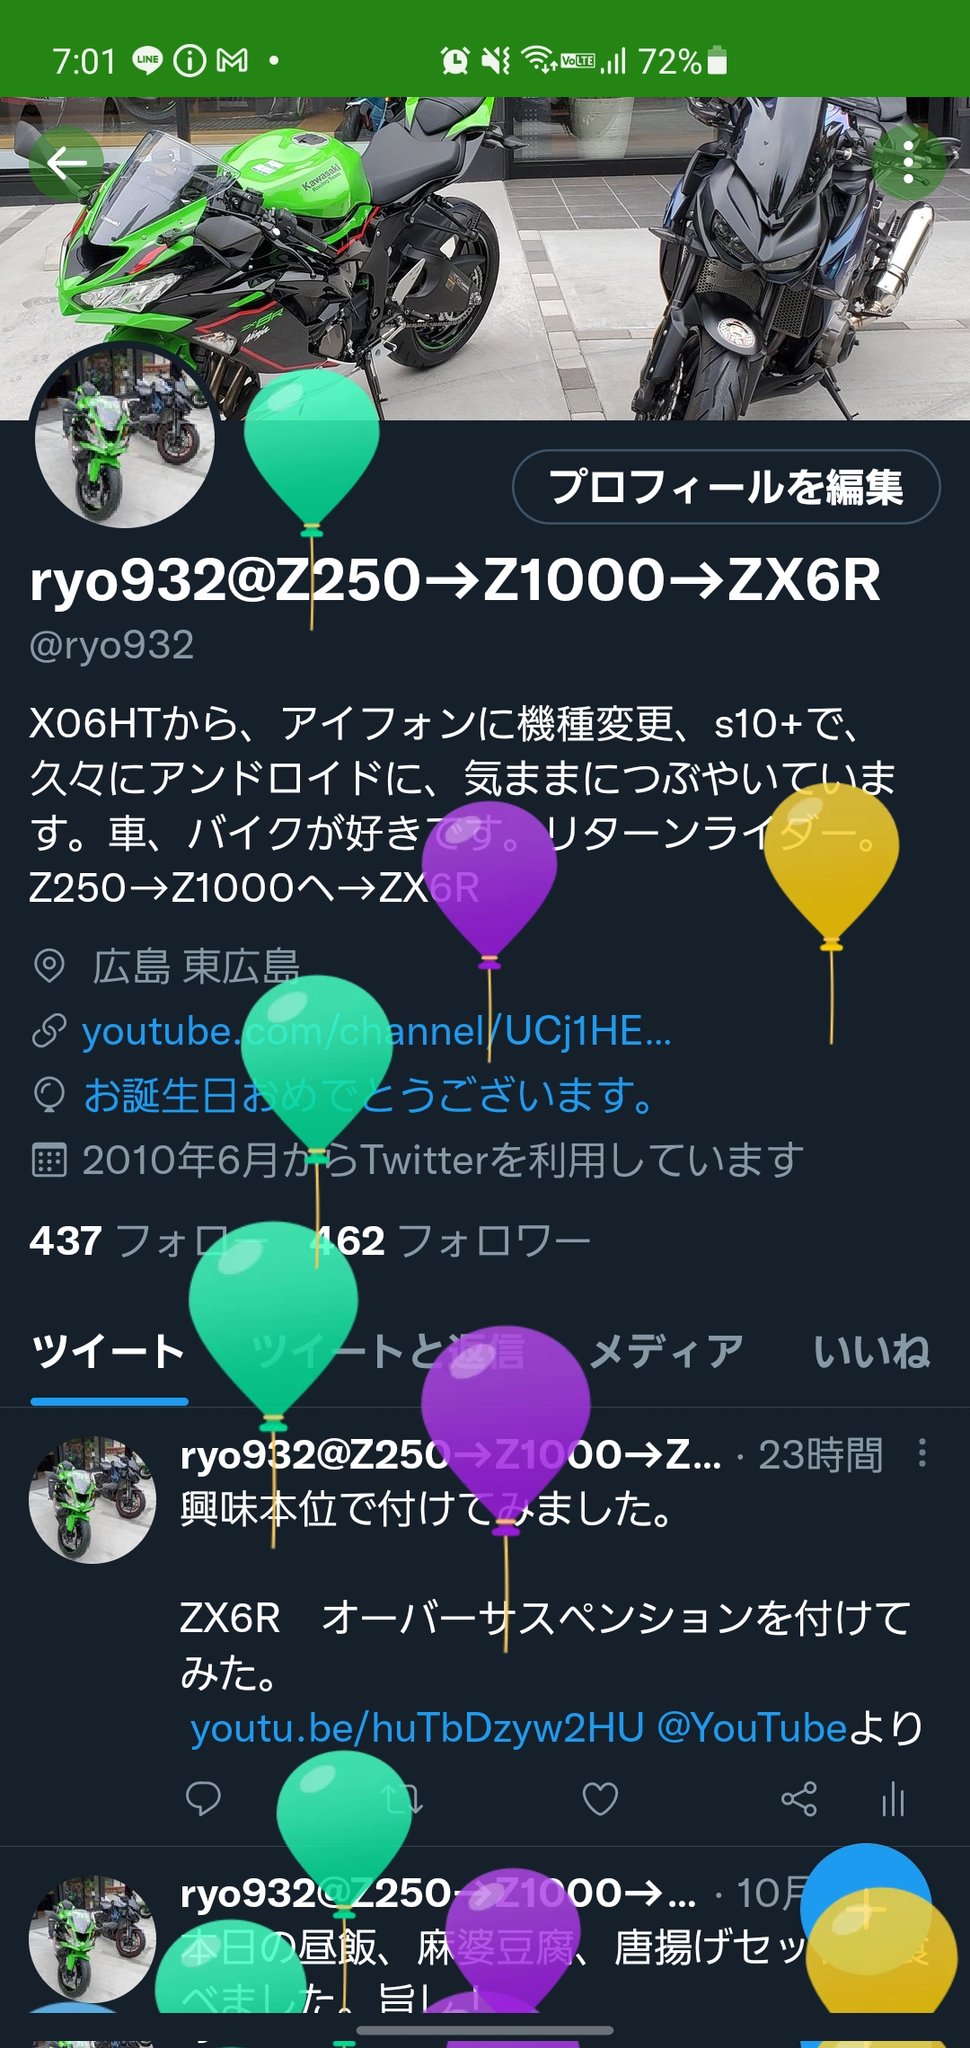 ryo932@Z250→Z1000→ZX6R (@ryo932) / Twitter